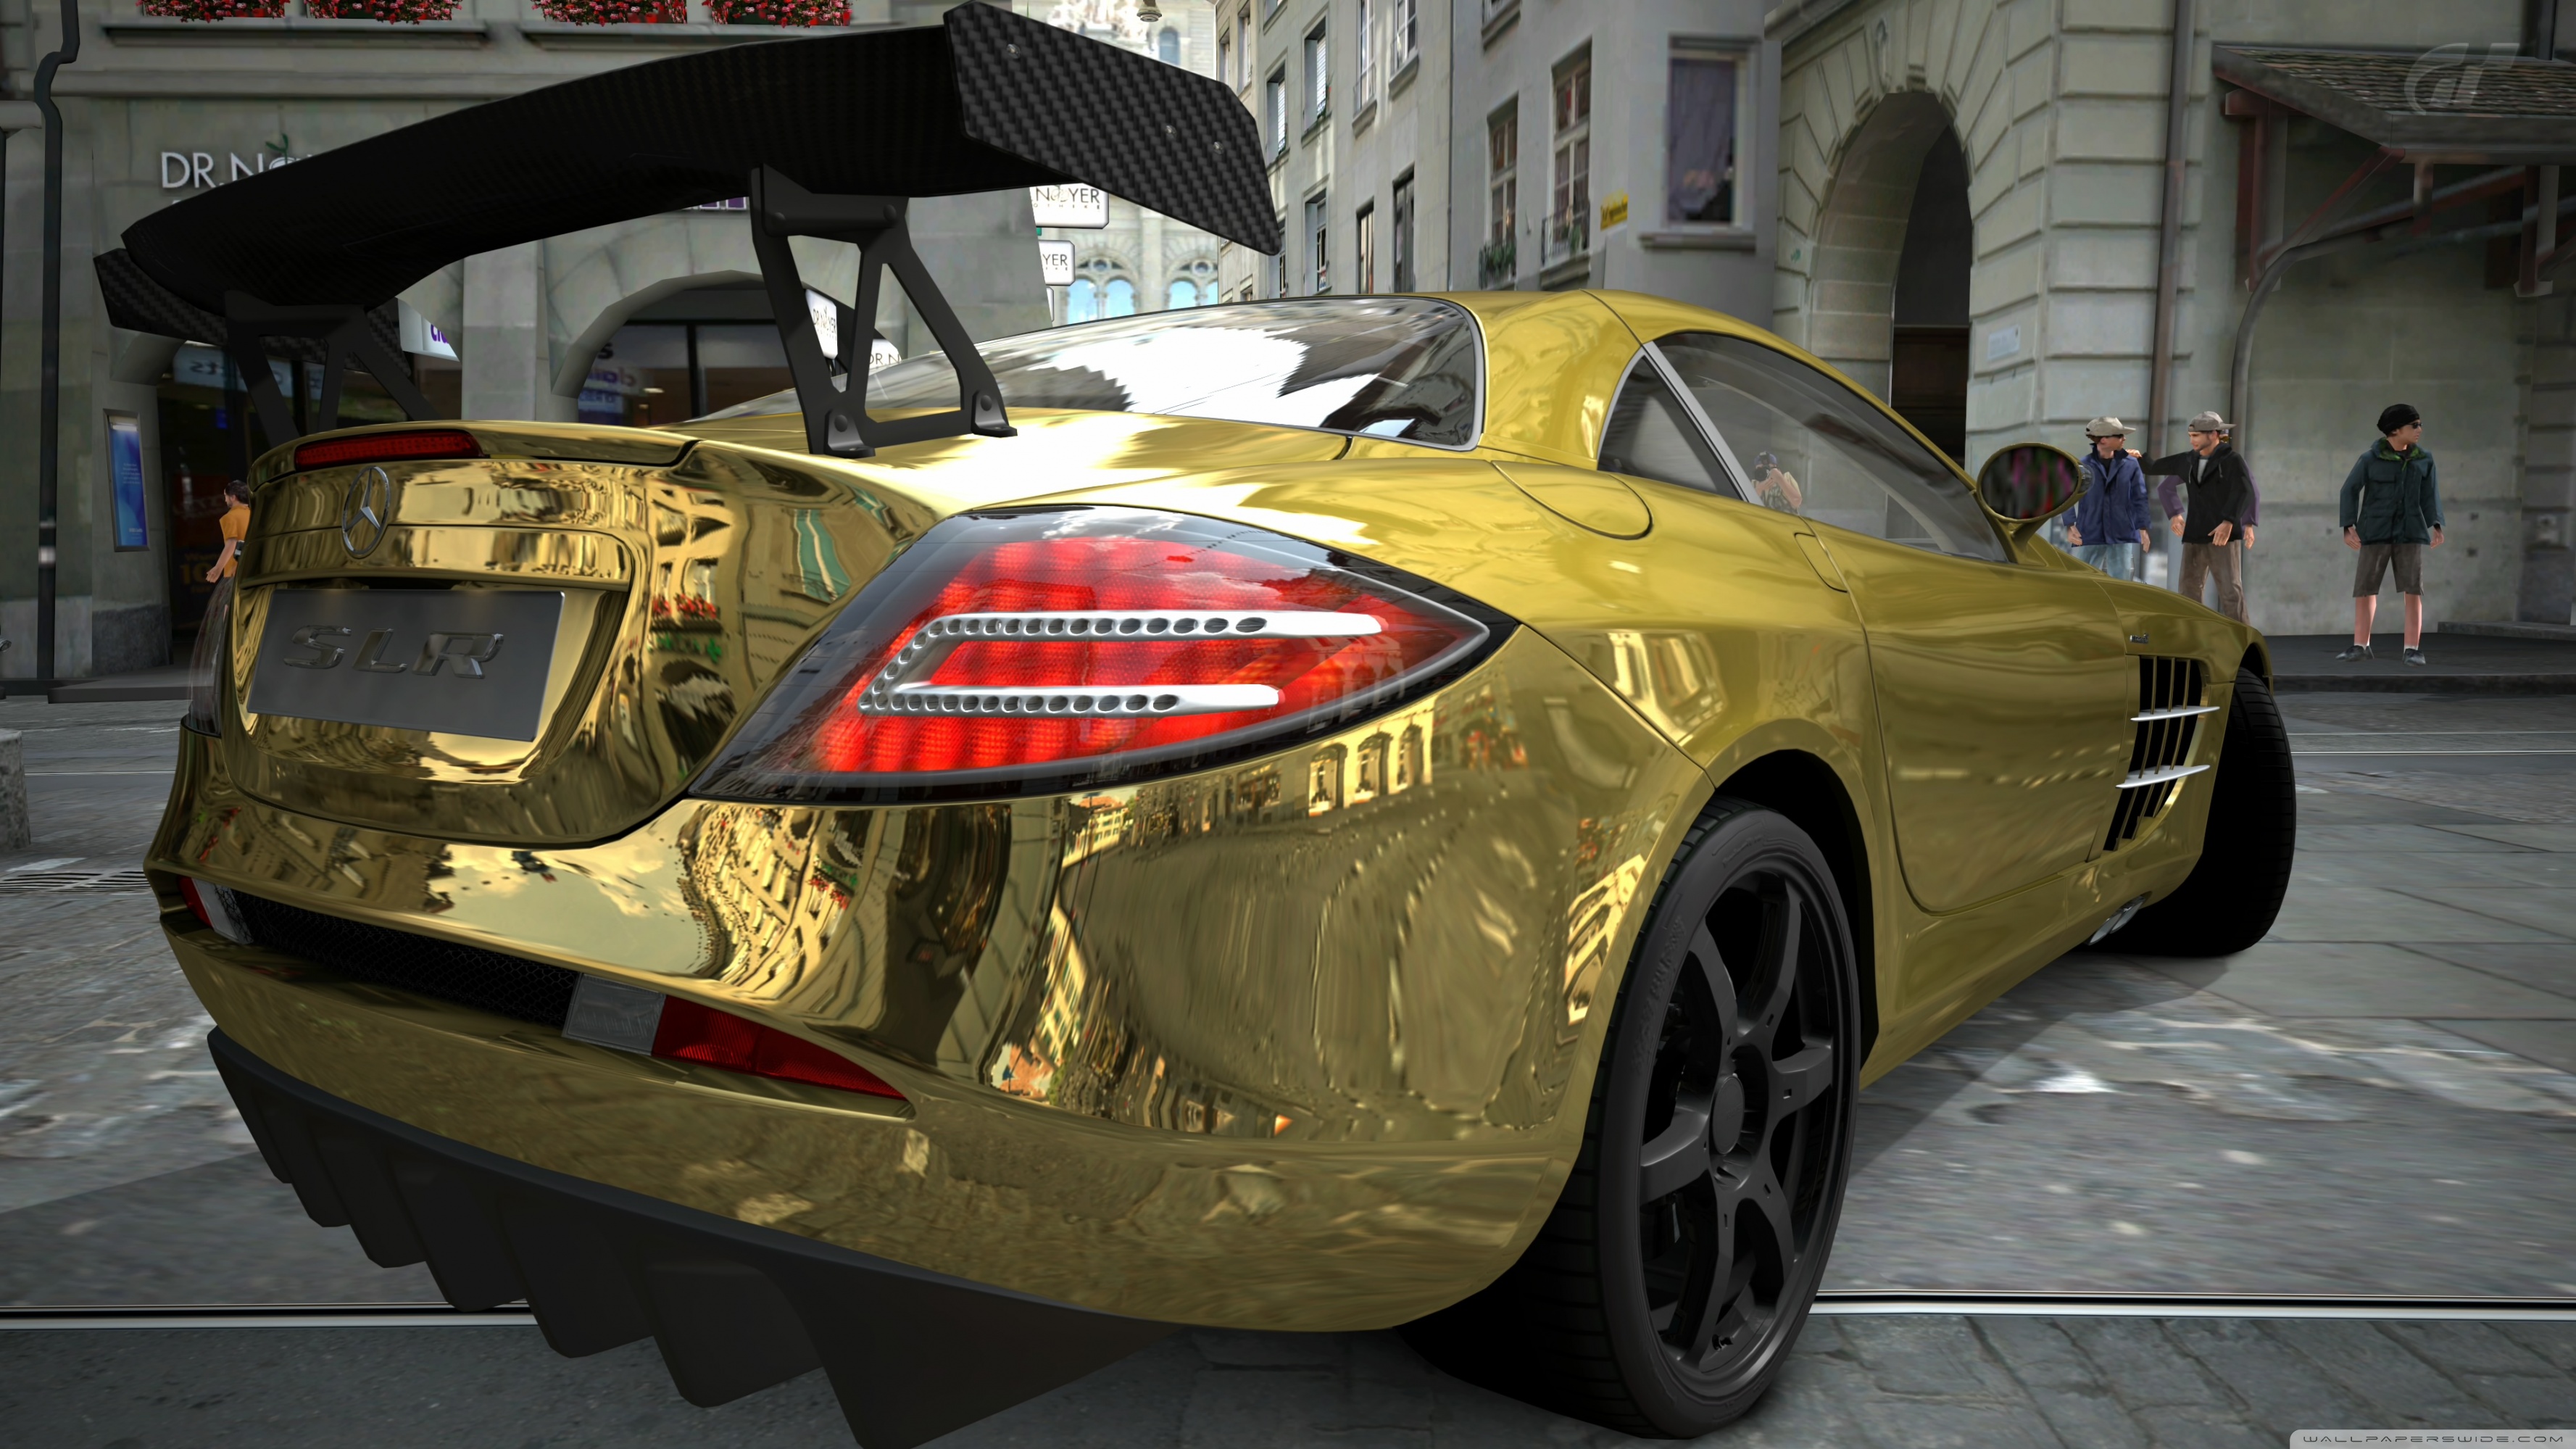 Mercedes Benz Slr Mclaren Gold 4k HD Desktop Wallpaper For